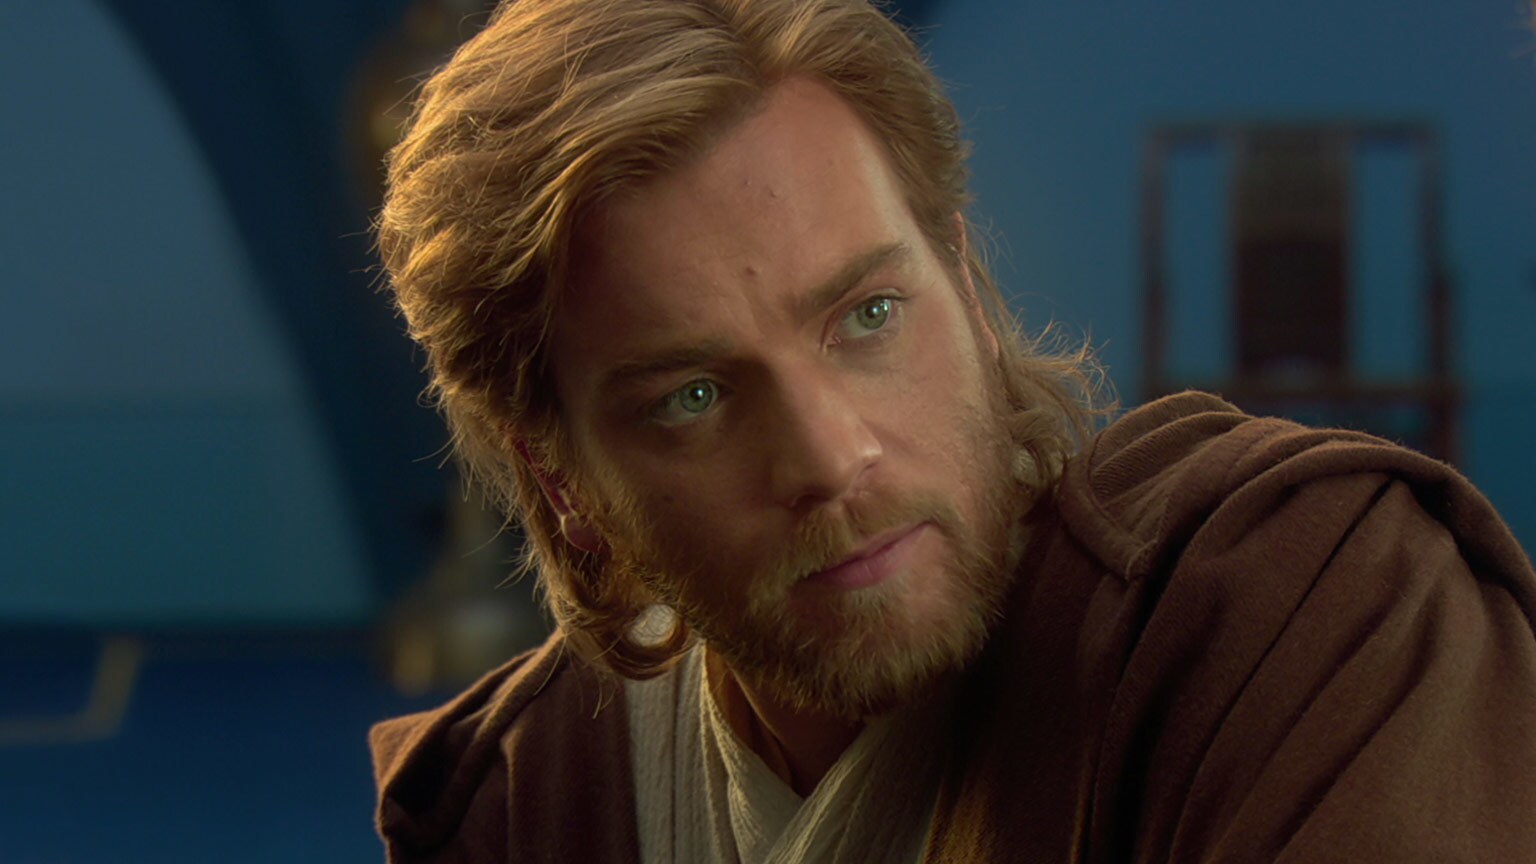 Obi-Wan Kenobi in Episode II